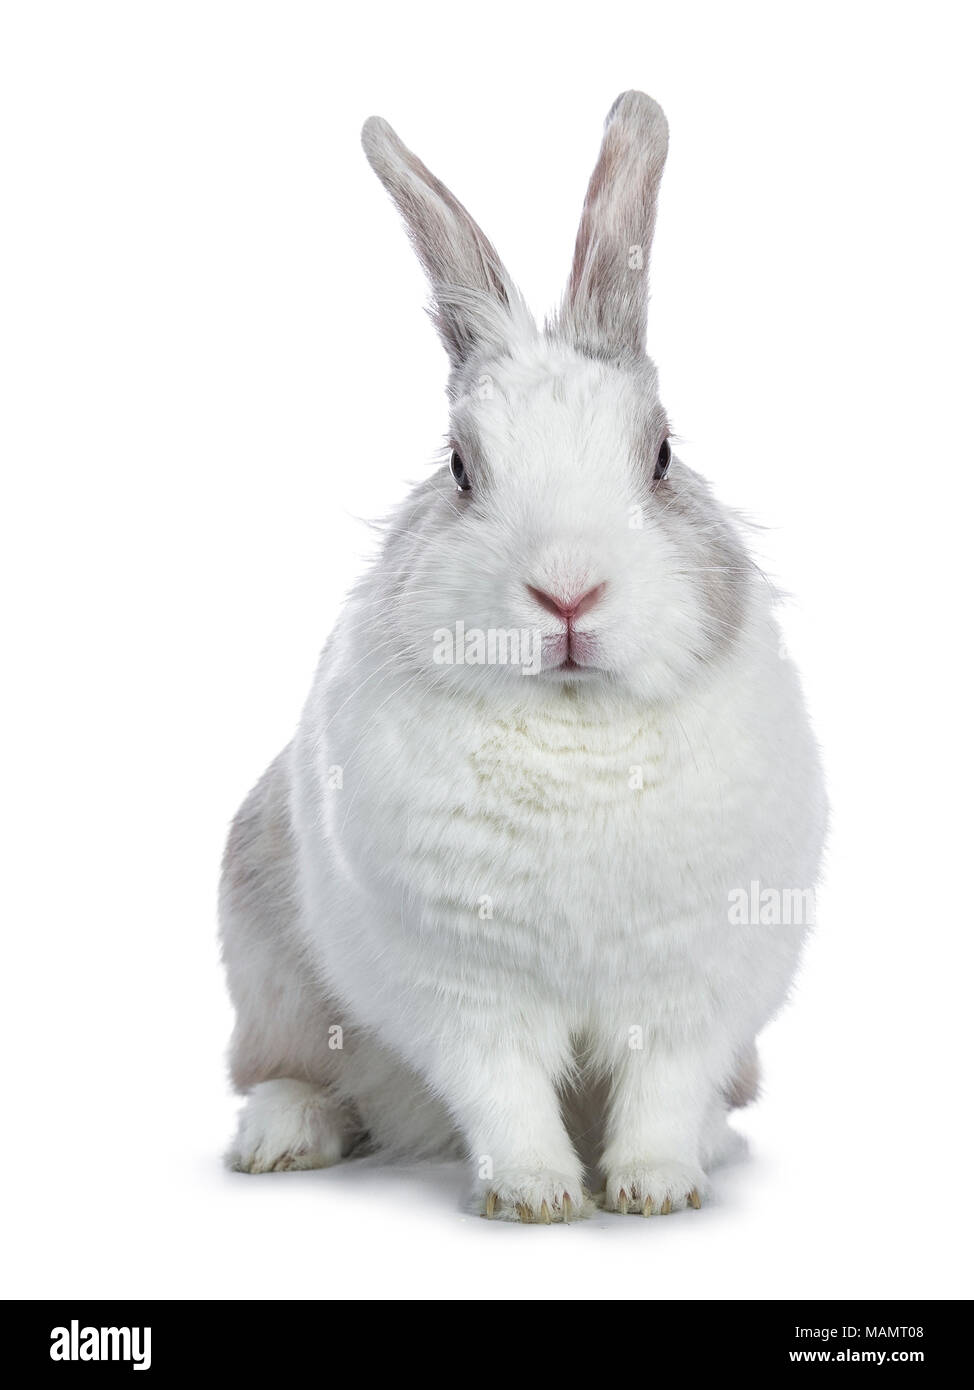 Carino bianco e grigio shorthair bunny seduto di fronte alla fotocamera isolati su sfondo bianco Foto Stock